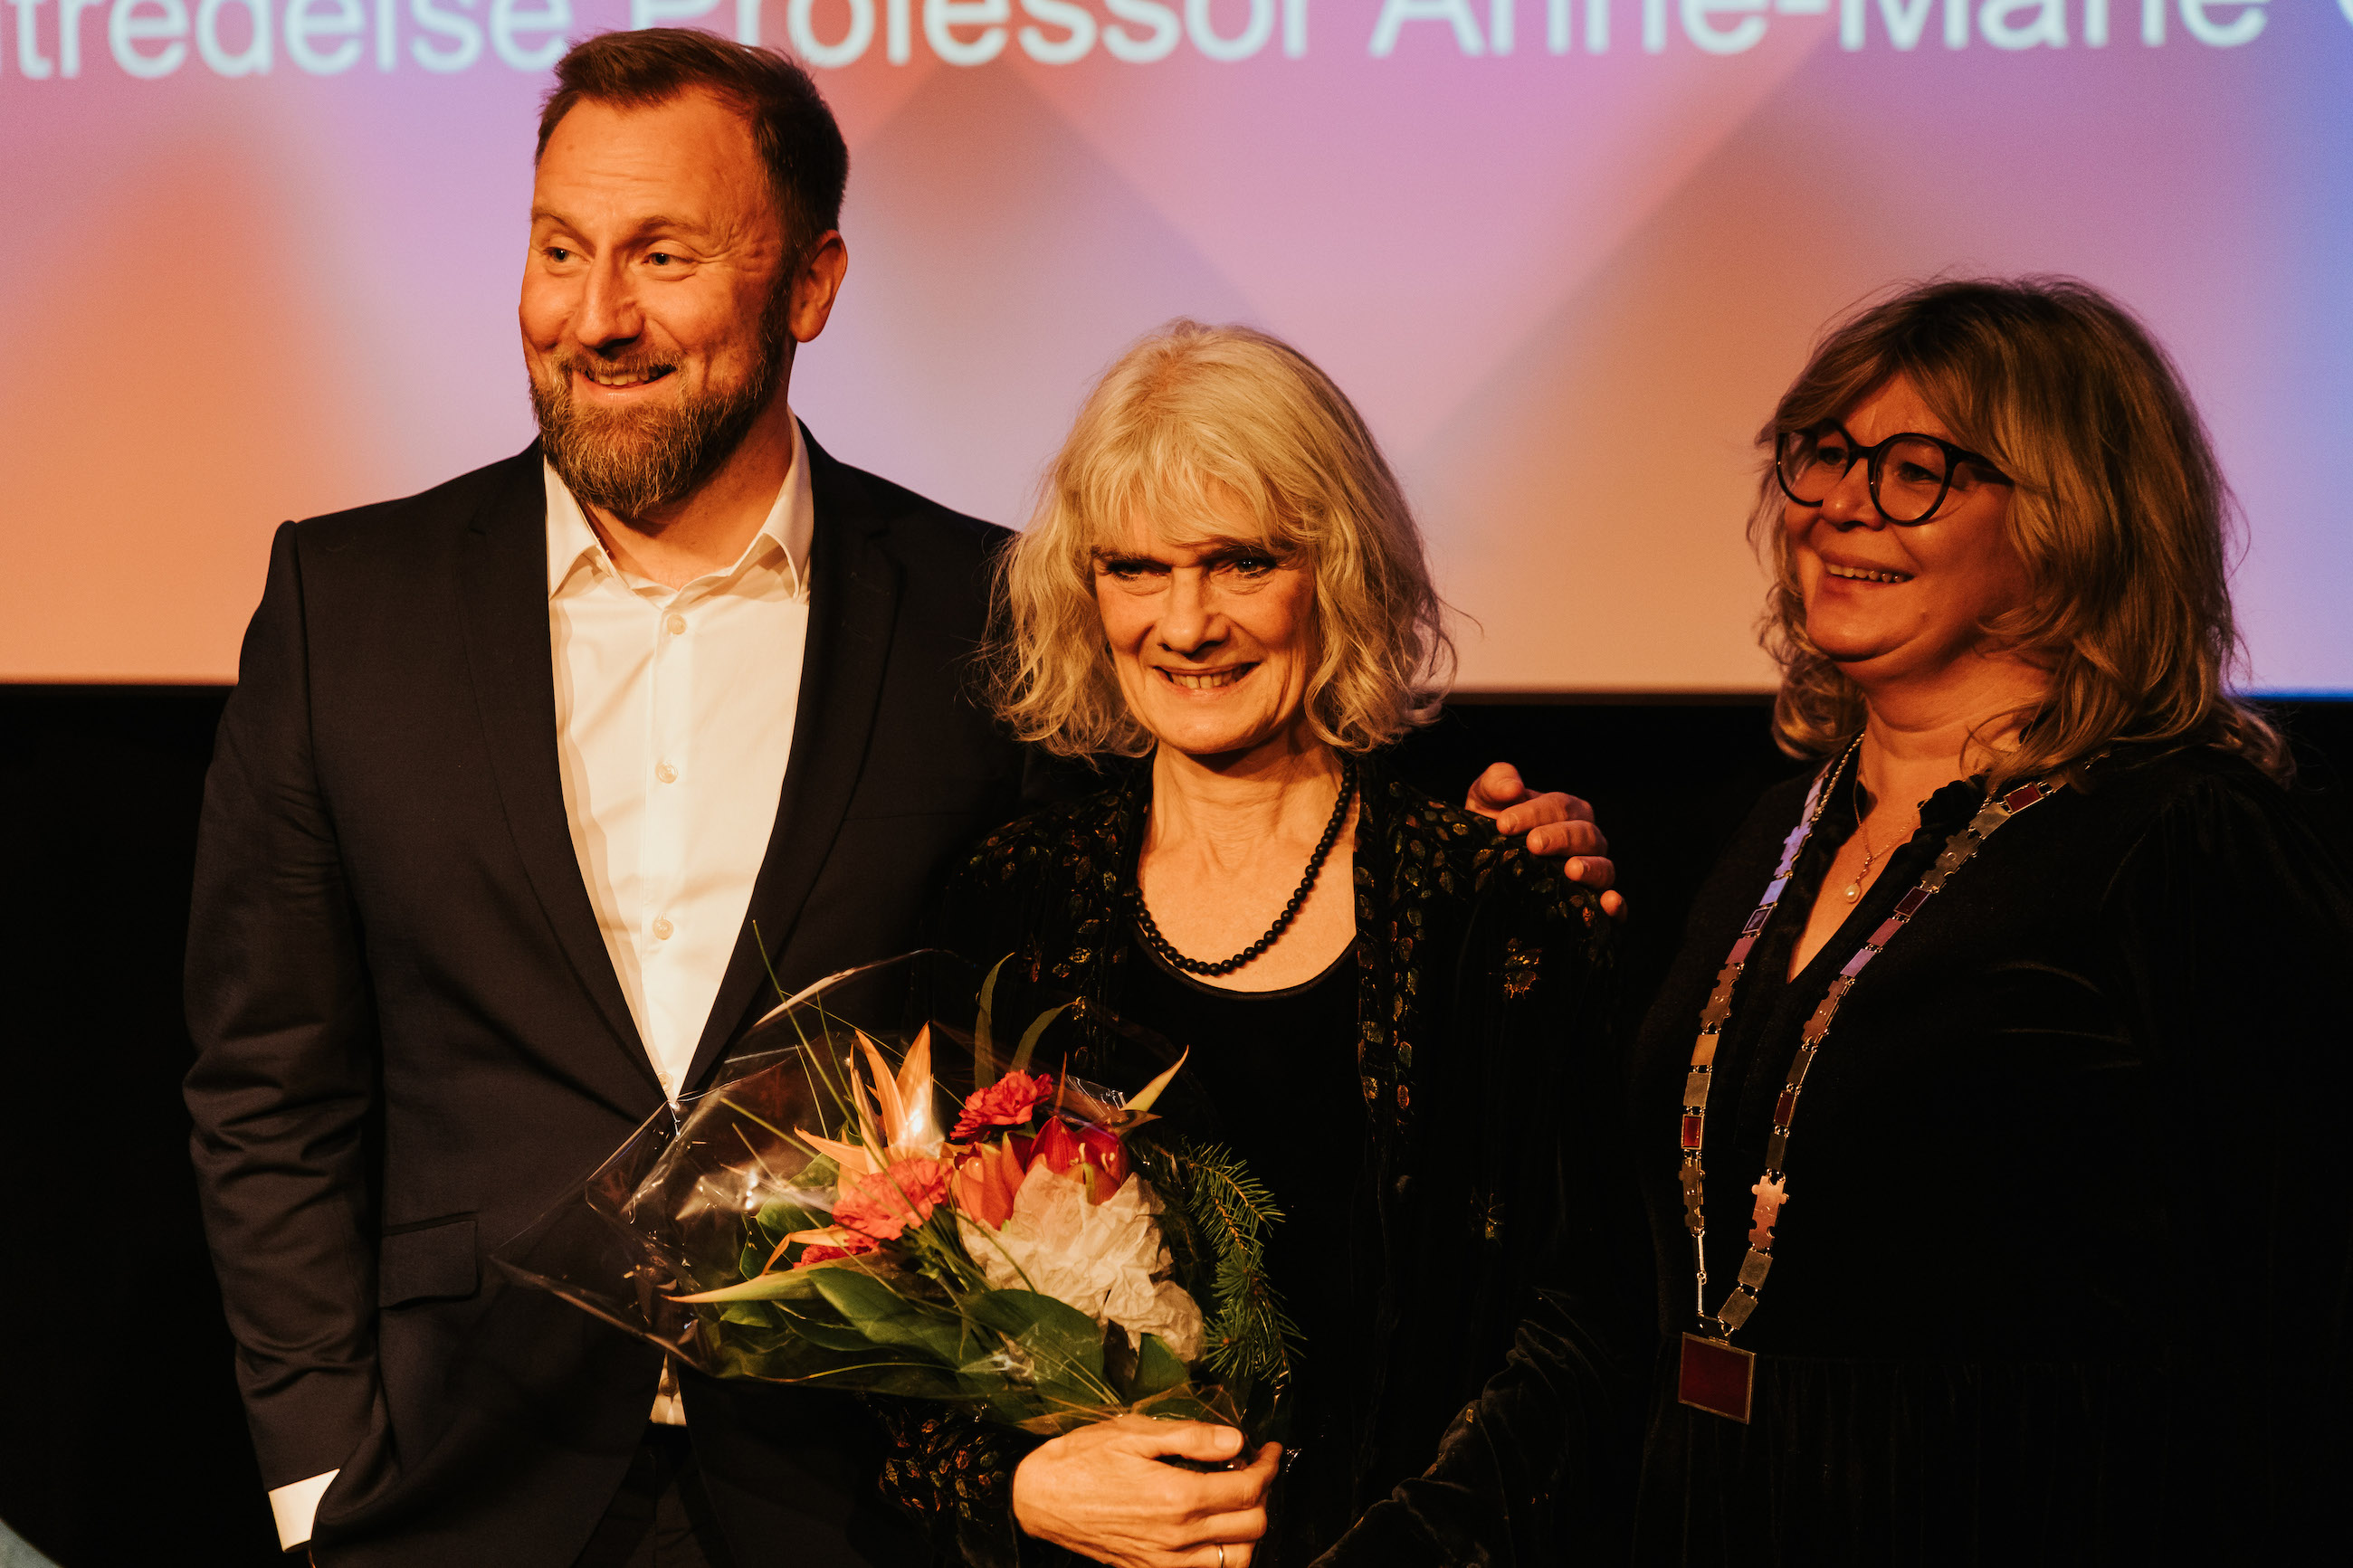 Anne-Marie Giørtz står i midten og smiler med blomster. På venstre side står em blid Kai Hanno Schmidt og på høyre side står prorektor Trine Johansen Meza og ser glad ut.